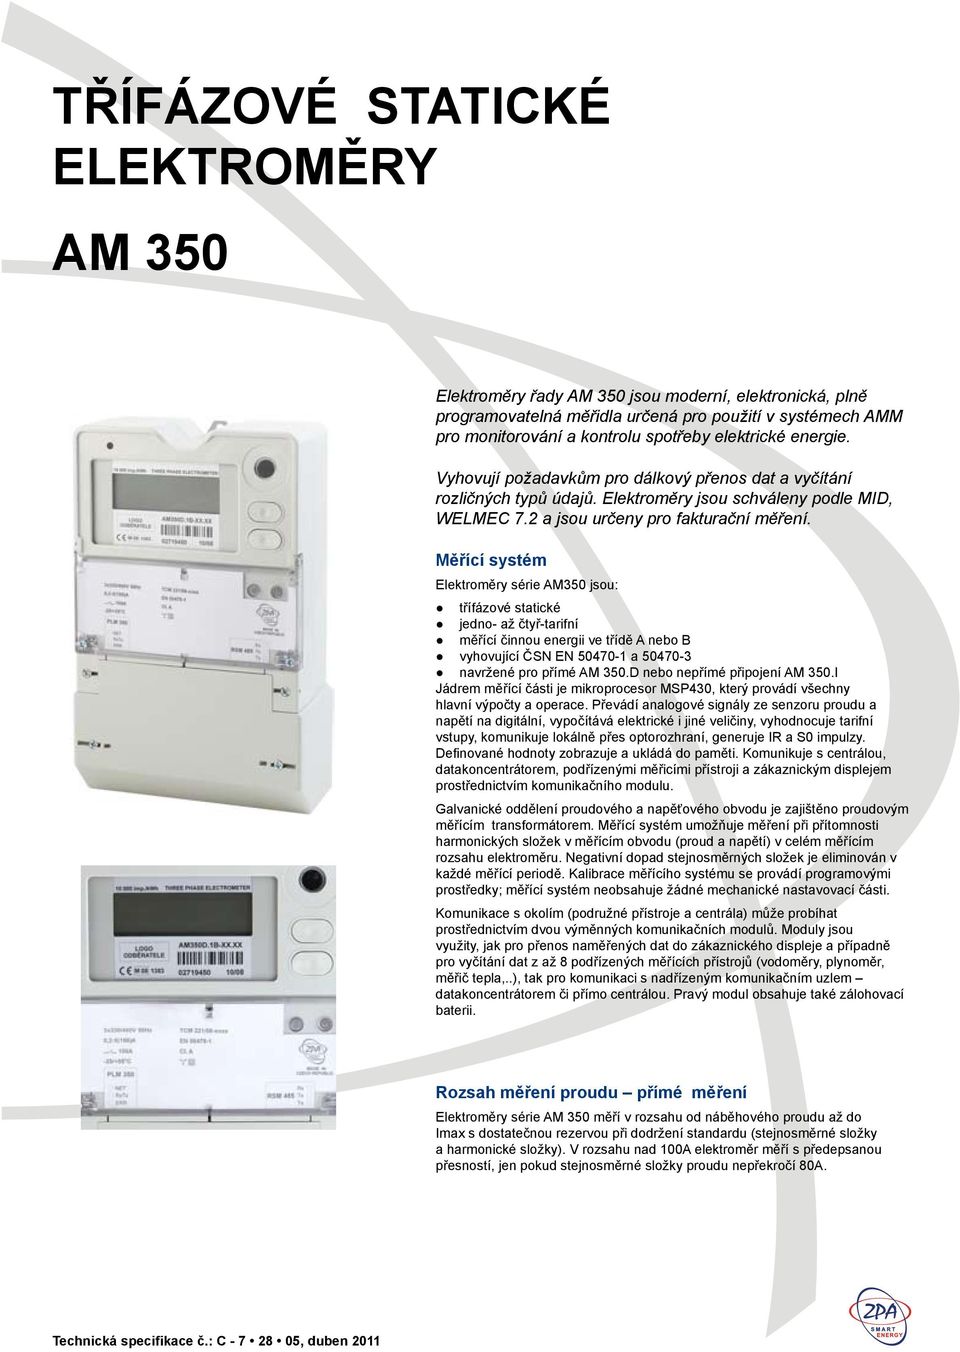 Měřící systém Elektroměry série AM350 jsou: třífázové statické jedno- až čtyř-tarifní měřící činnou energii ve třídě A nebo B vyhovující ČSN EN 50470-1 a 50470-3 navržené pro přímé AM 350.